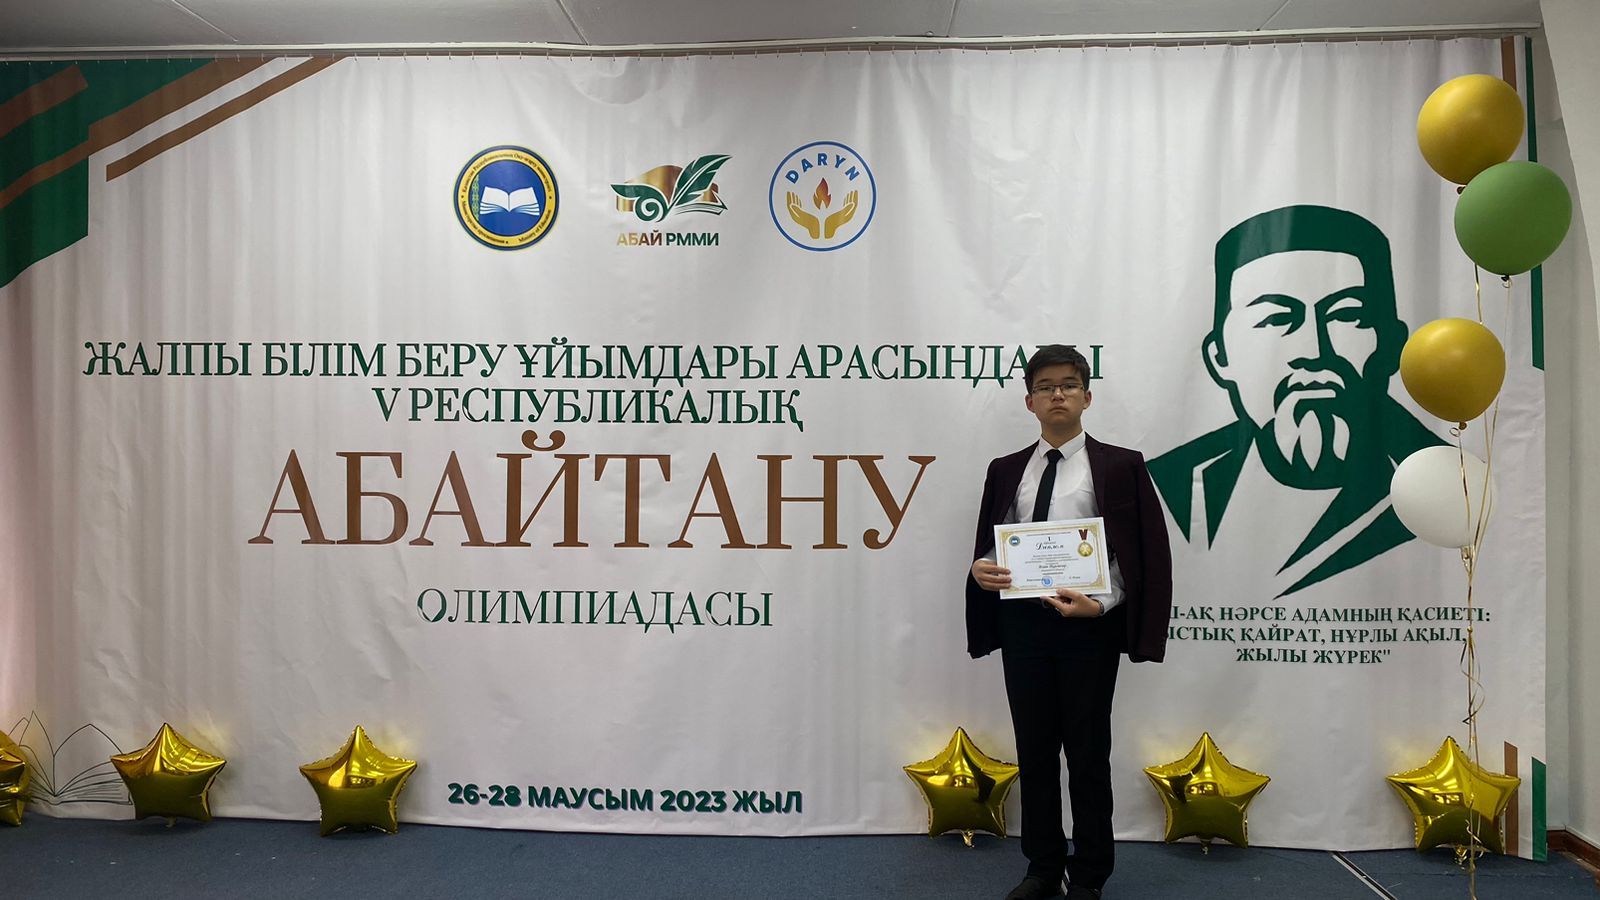 Карагандинский школьник завоевал первое место на республиканской олимпиаде «Абайтану»